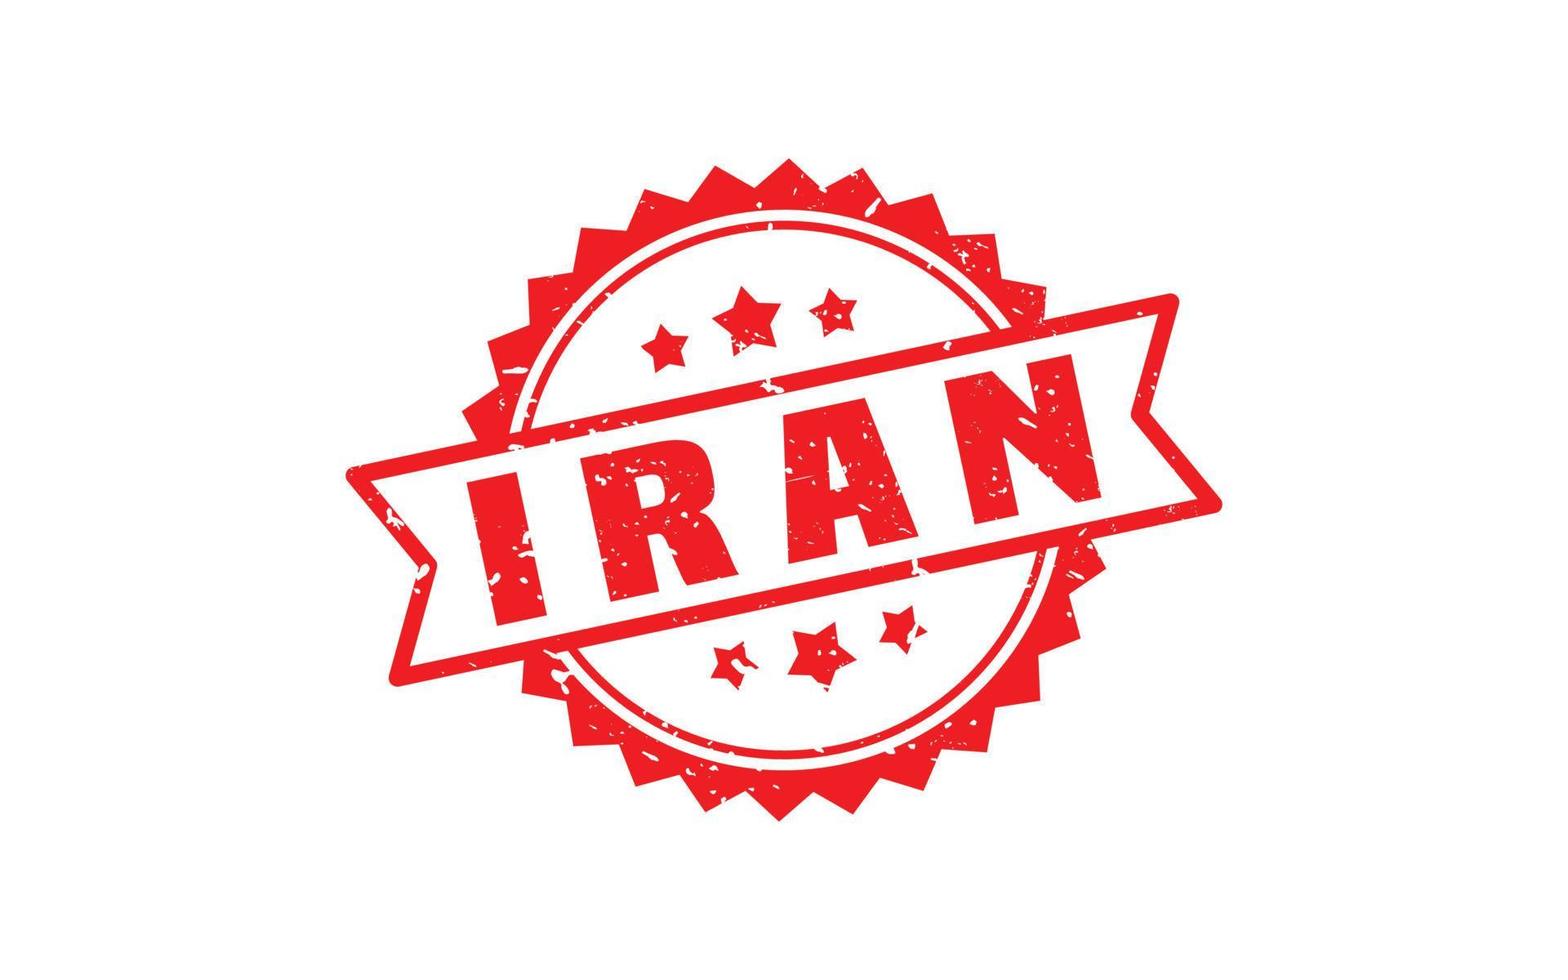 borracha de carimbo do Irã com estilo grunge em fundo branco vetor